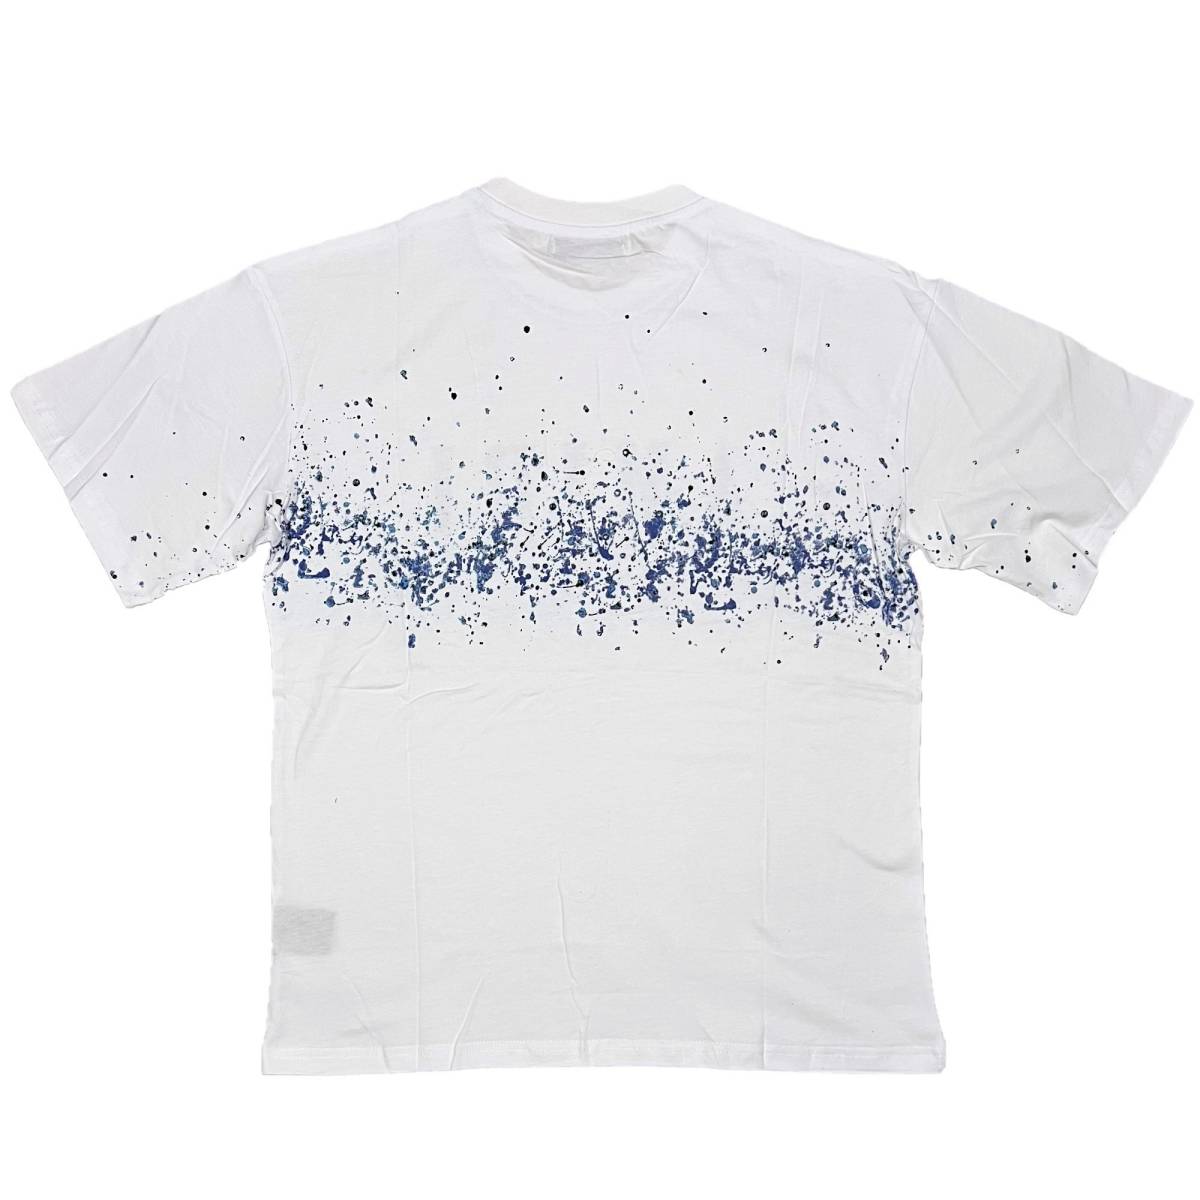 [並行輸入品] AMIRI アミリ BLUE PAINT BLEACH S/S T shirt ブルーペイント ブリーチ 半袖 Tシャツ (ホワイト) (XL)の画像2